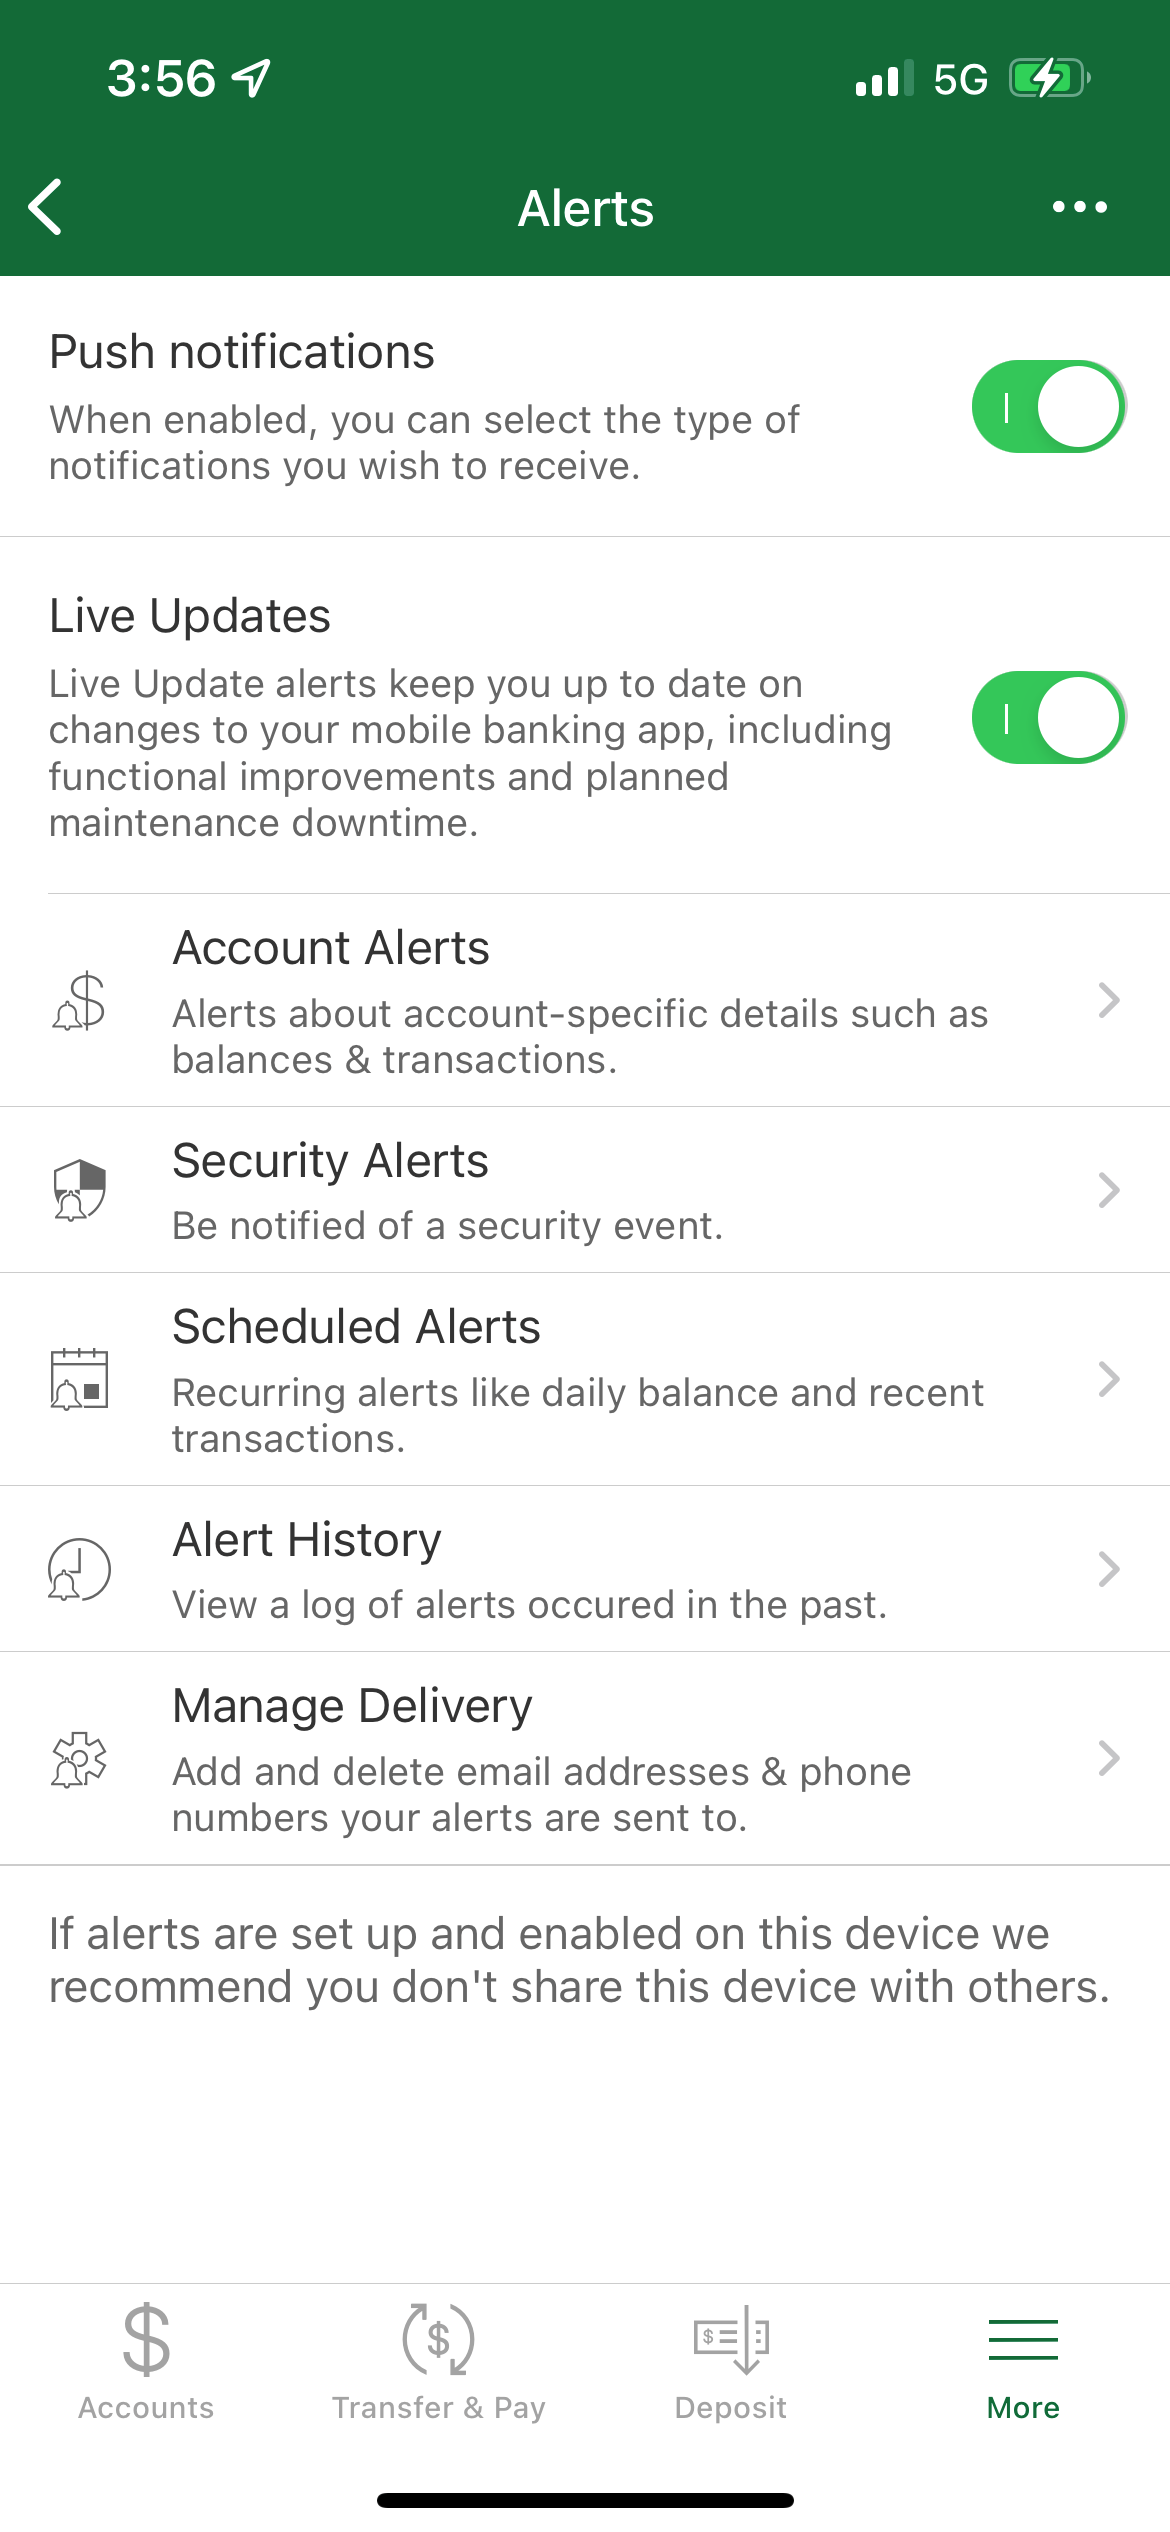 Mobile App Alerts Menu 08-2021